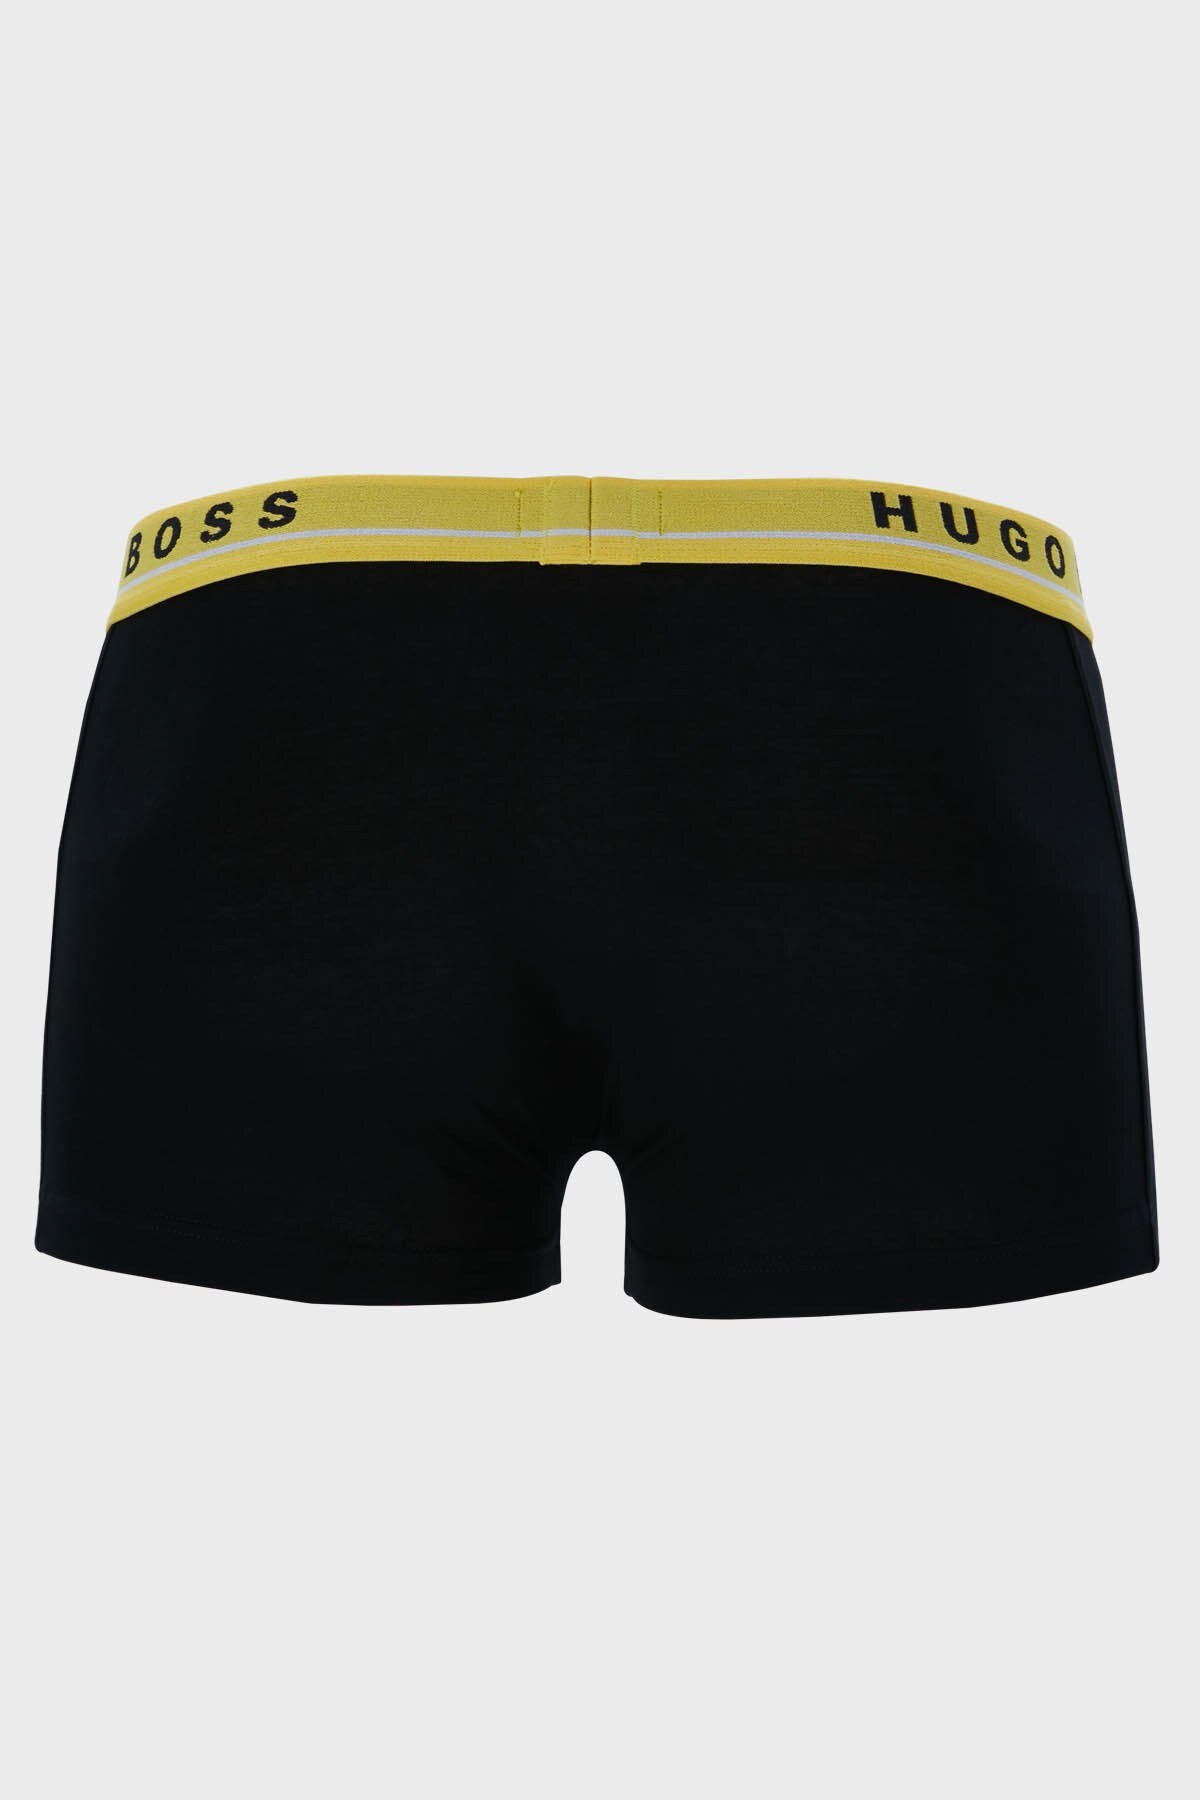 Hugo Boss 3 Pack Esnek Pamuklu Erkek Boxer 50459358 985 SİYAH